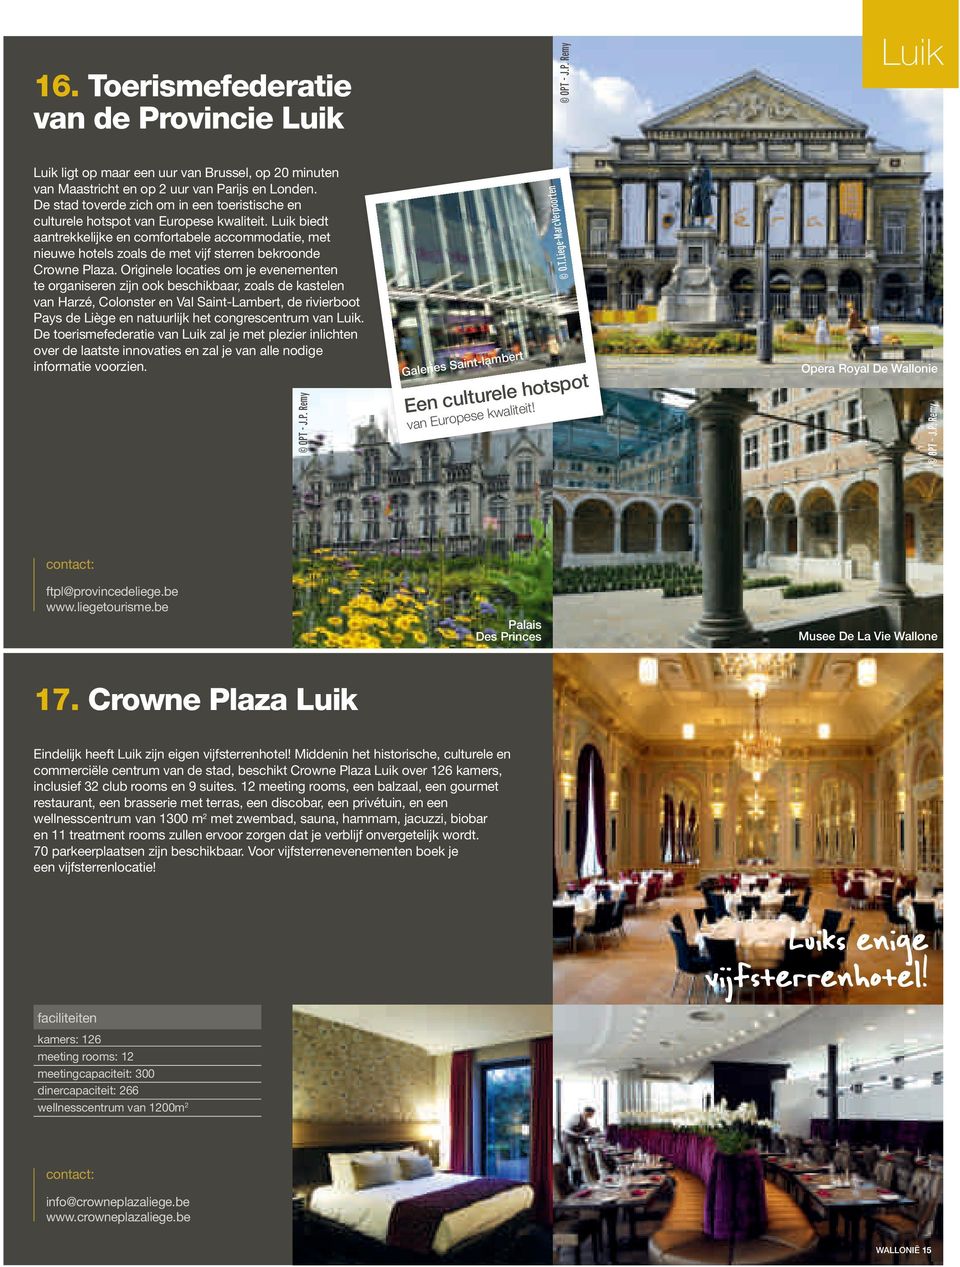 Luik biedt aantrekkelijke en comfortabele accommodatie, met nieuwe hotels zoals de met vijf sterren bekroonde Crowne Plaza.